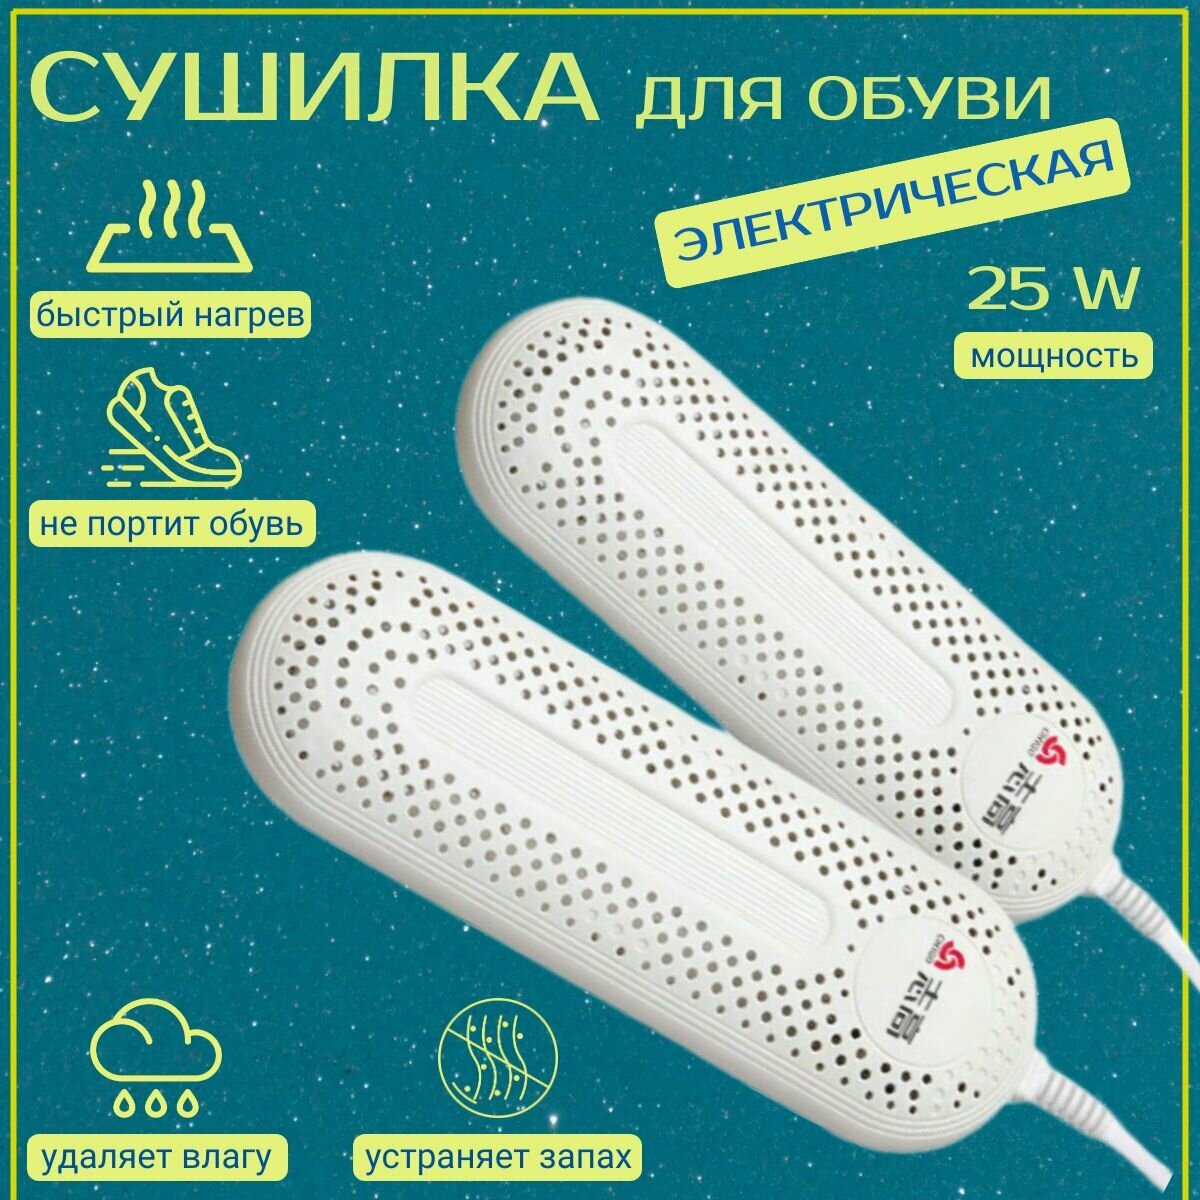 Сушилка для обуви электрическая с таймером / Ультрафиолетовая Антибактериальная Противогрибковая сушка с таймером/ бережная сушка устранение запаха в обуви.